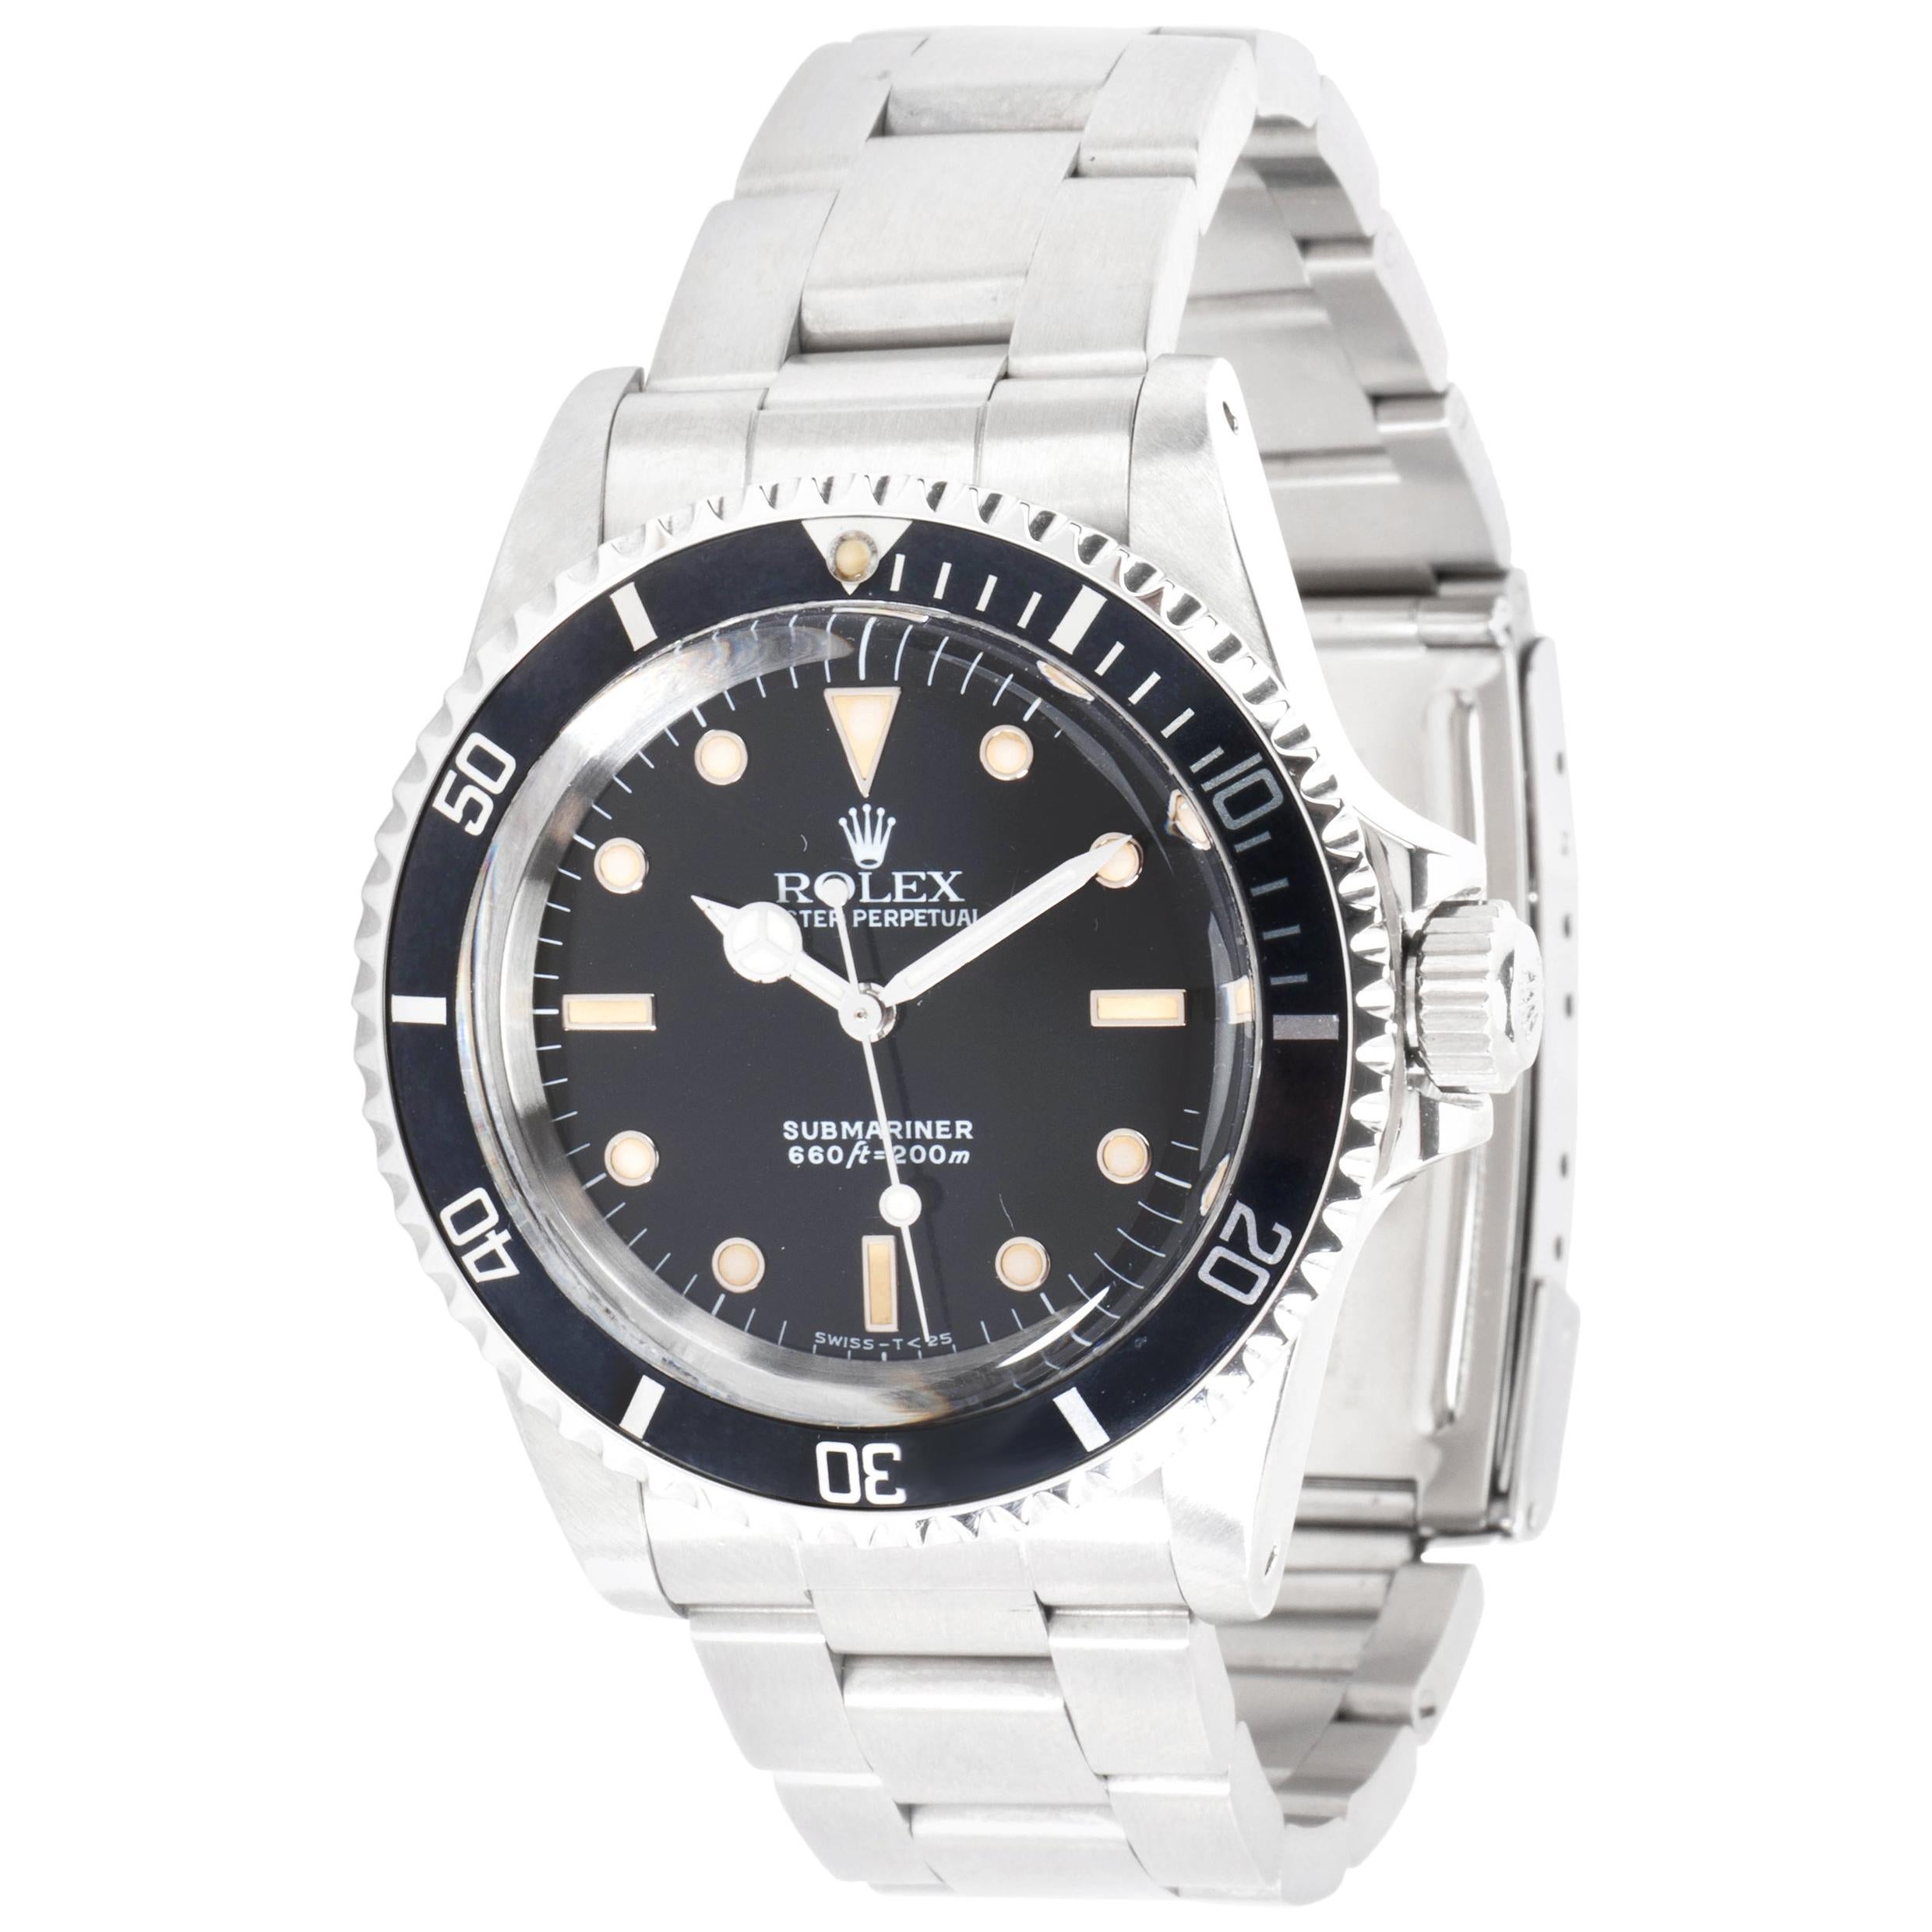 Rolex Submariner 5513 Men's Watch in Stainless Steel